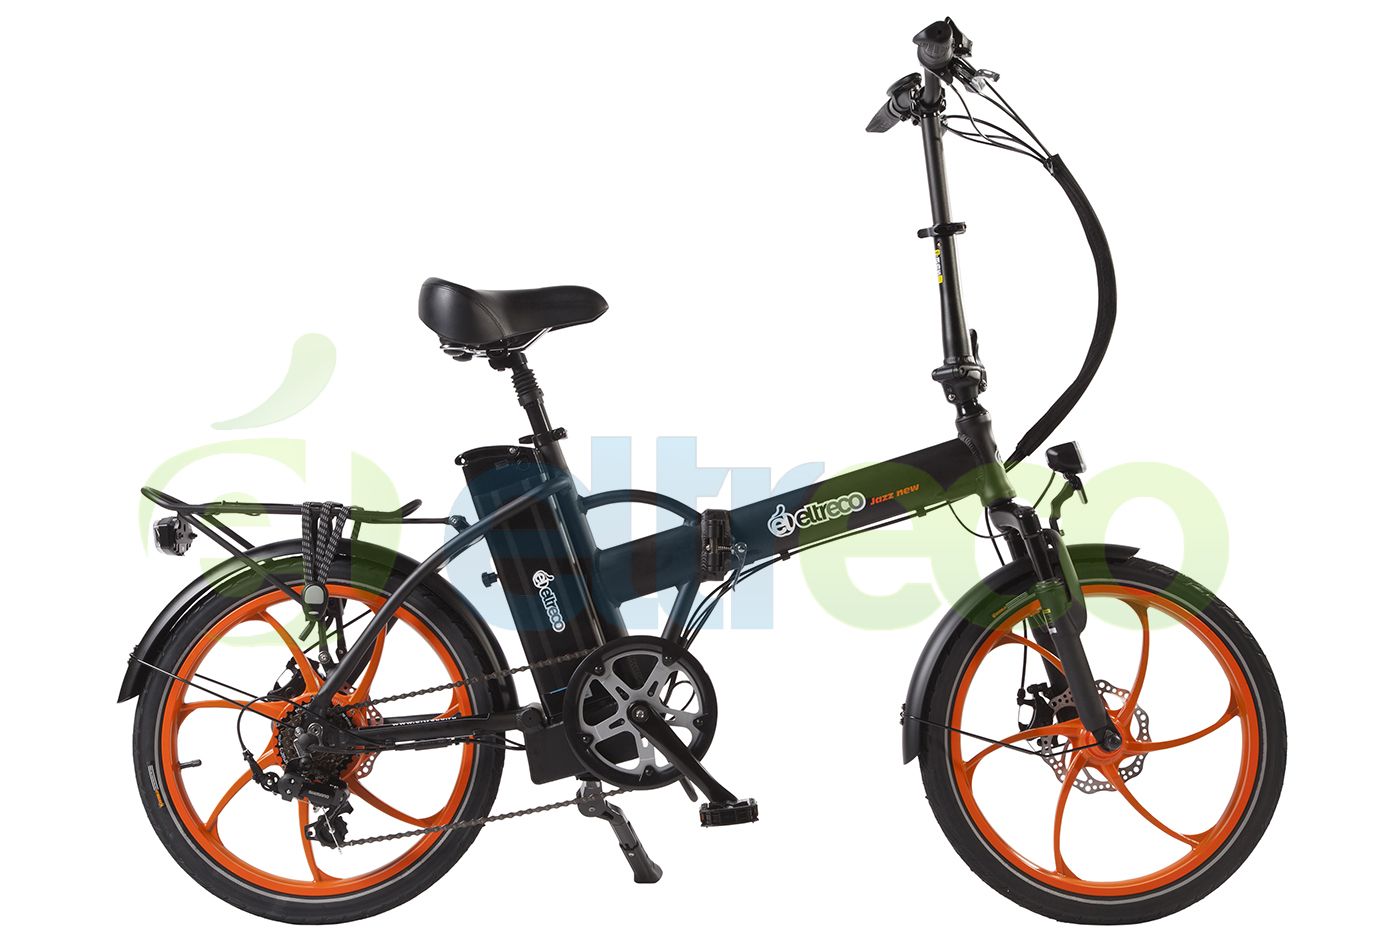  Велосипед Eltreco Jazz 5.0 2016